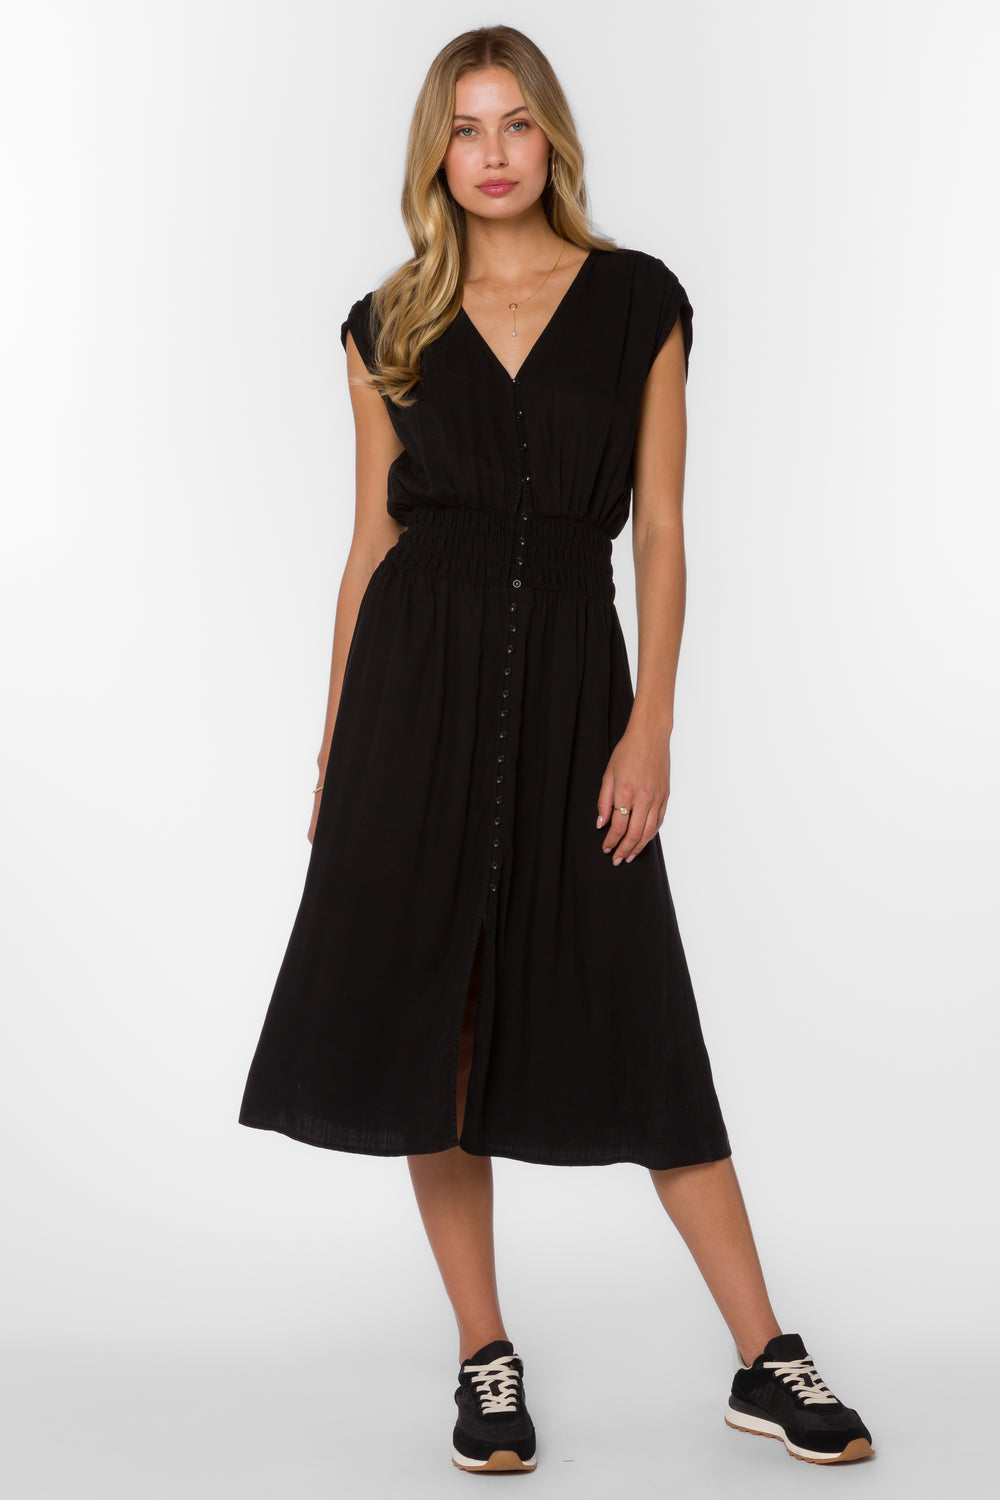 Persa Black Dress - Dresses - Velvet Heart Clothing